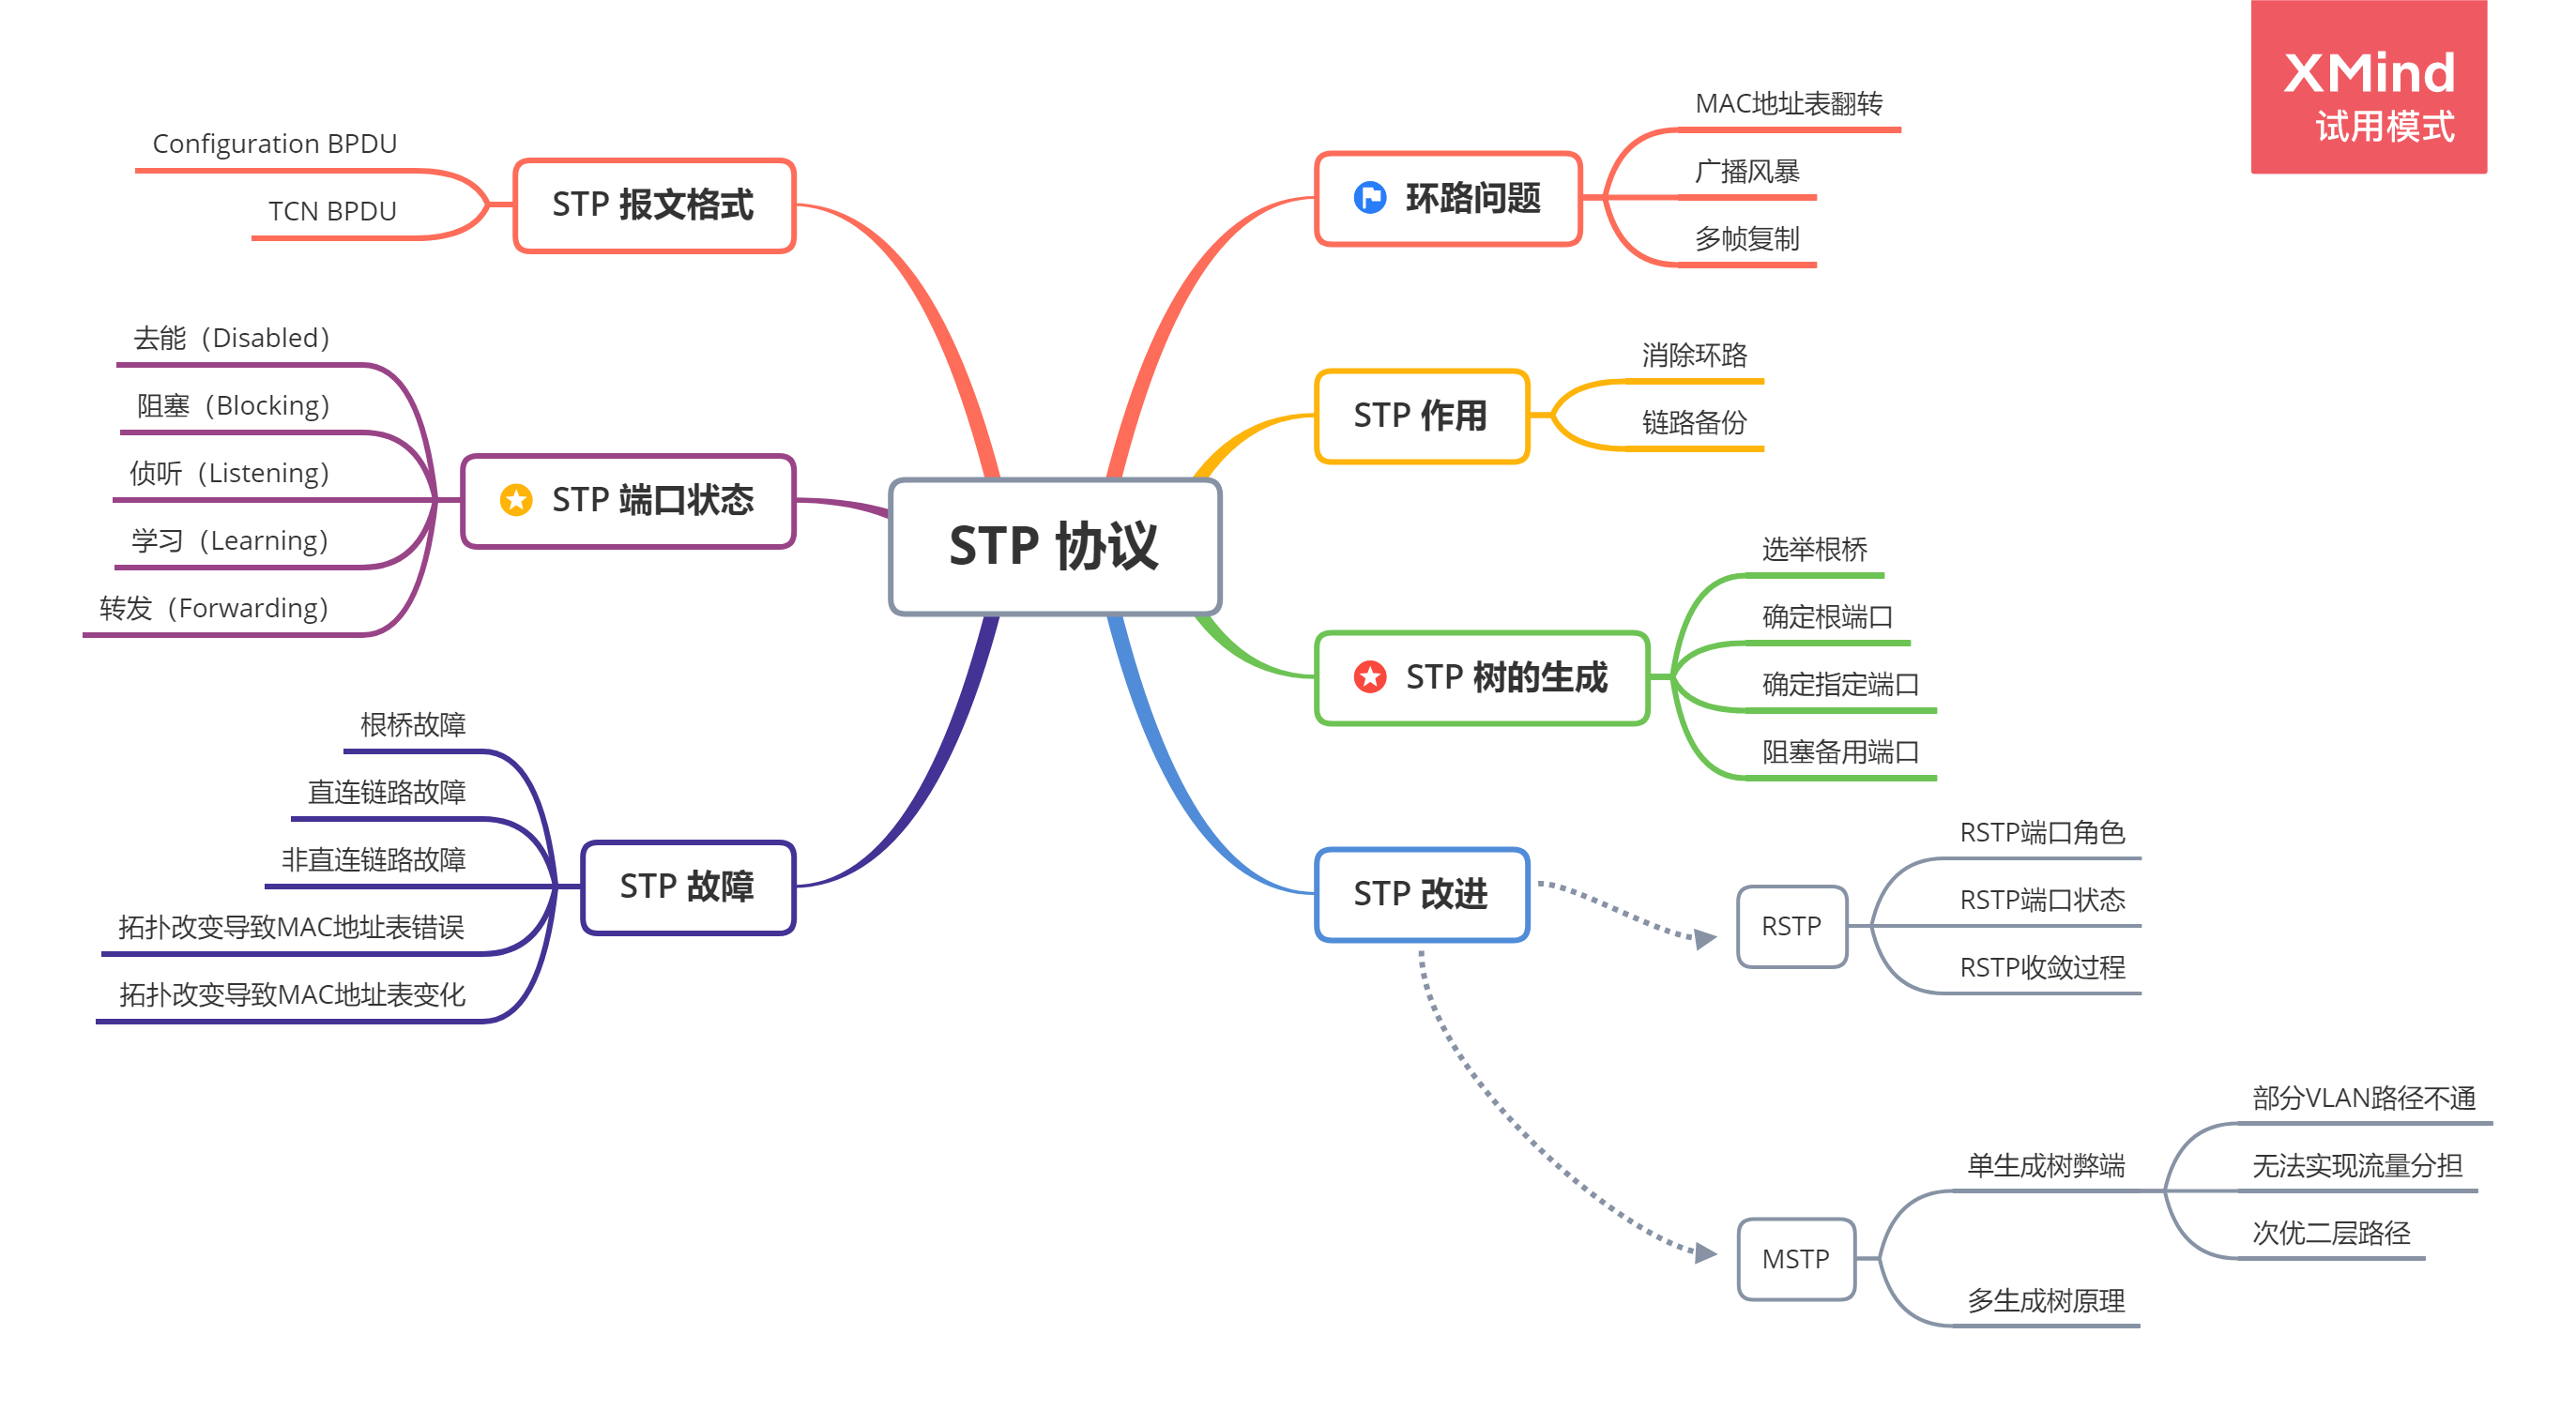 分享今日:参考博客链接:rstp协议stp 协议mstp思维导图:1 环路问题1